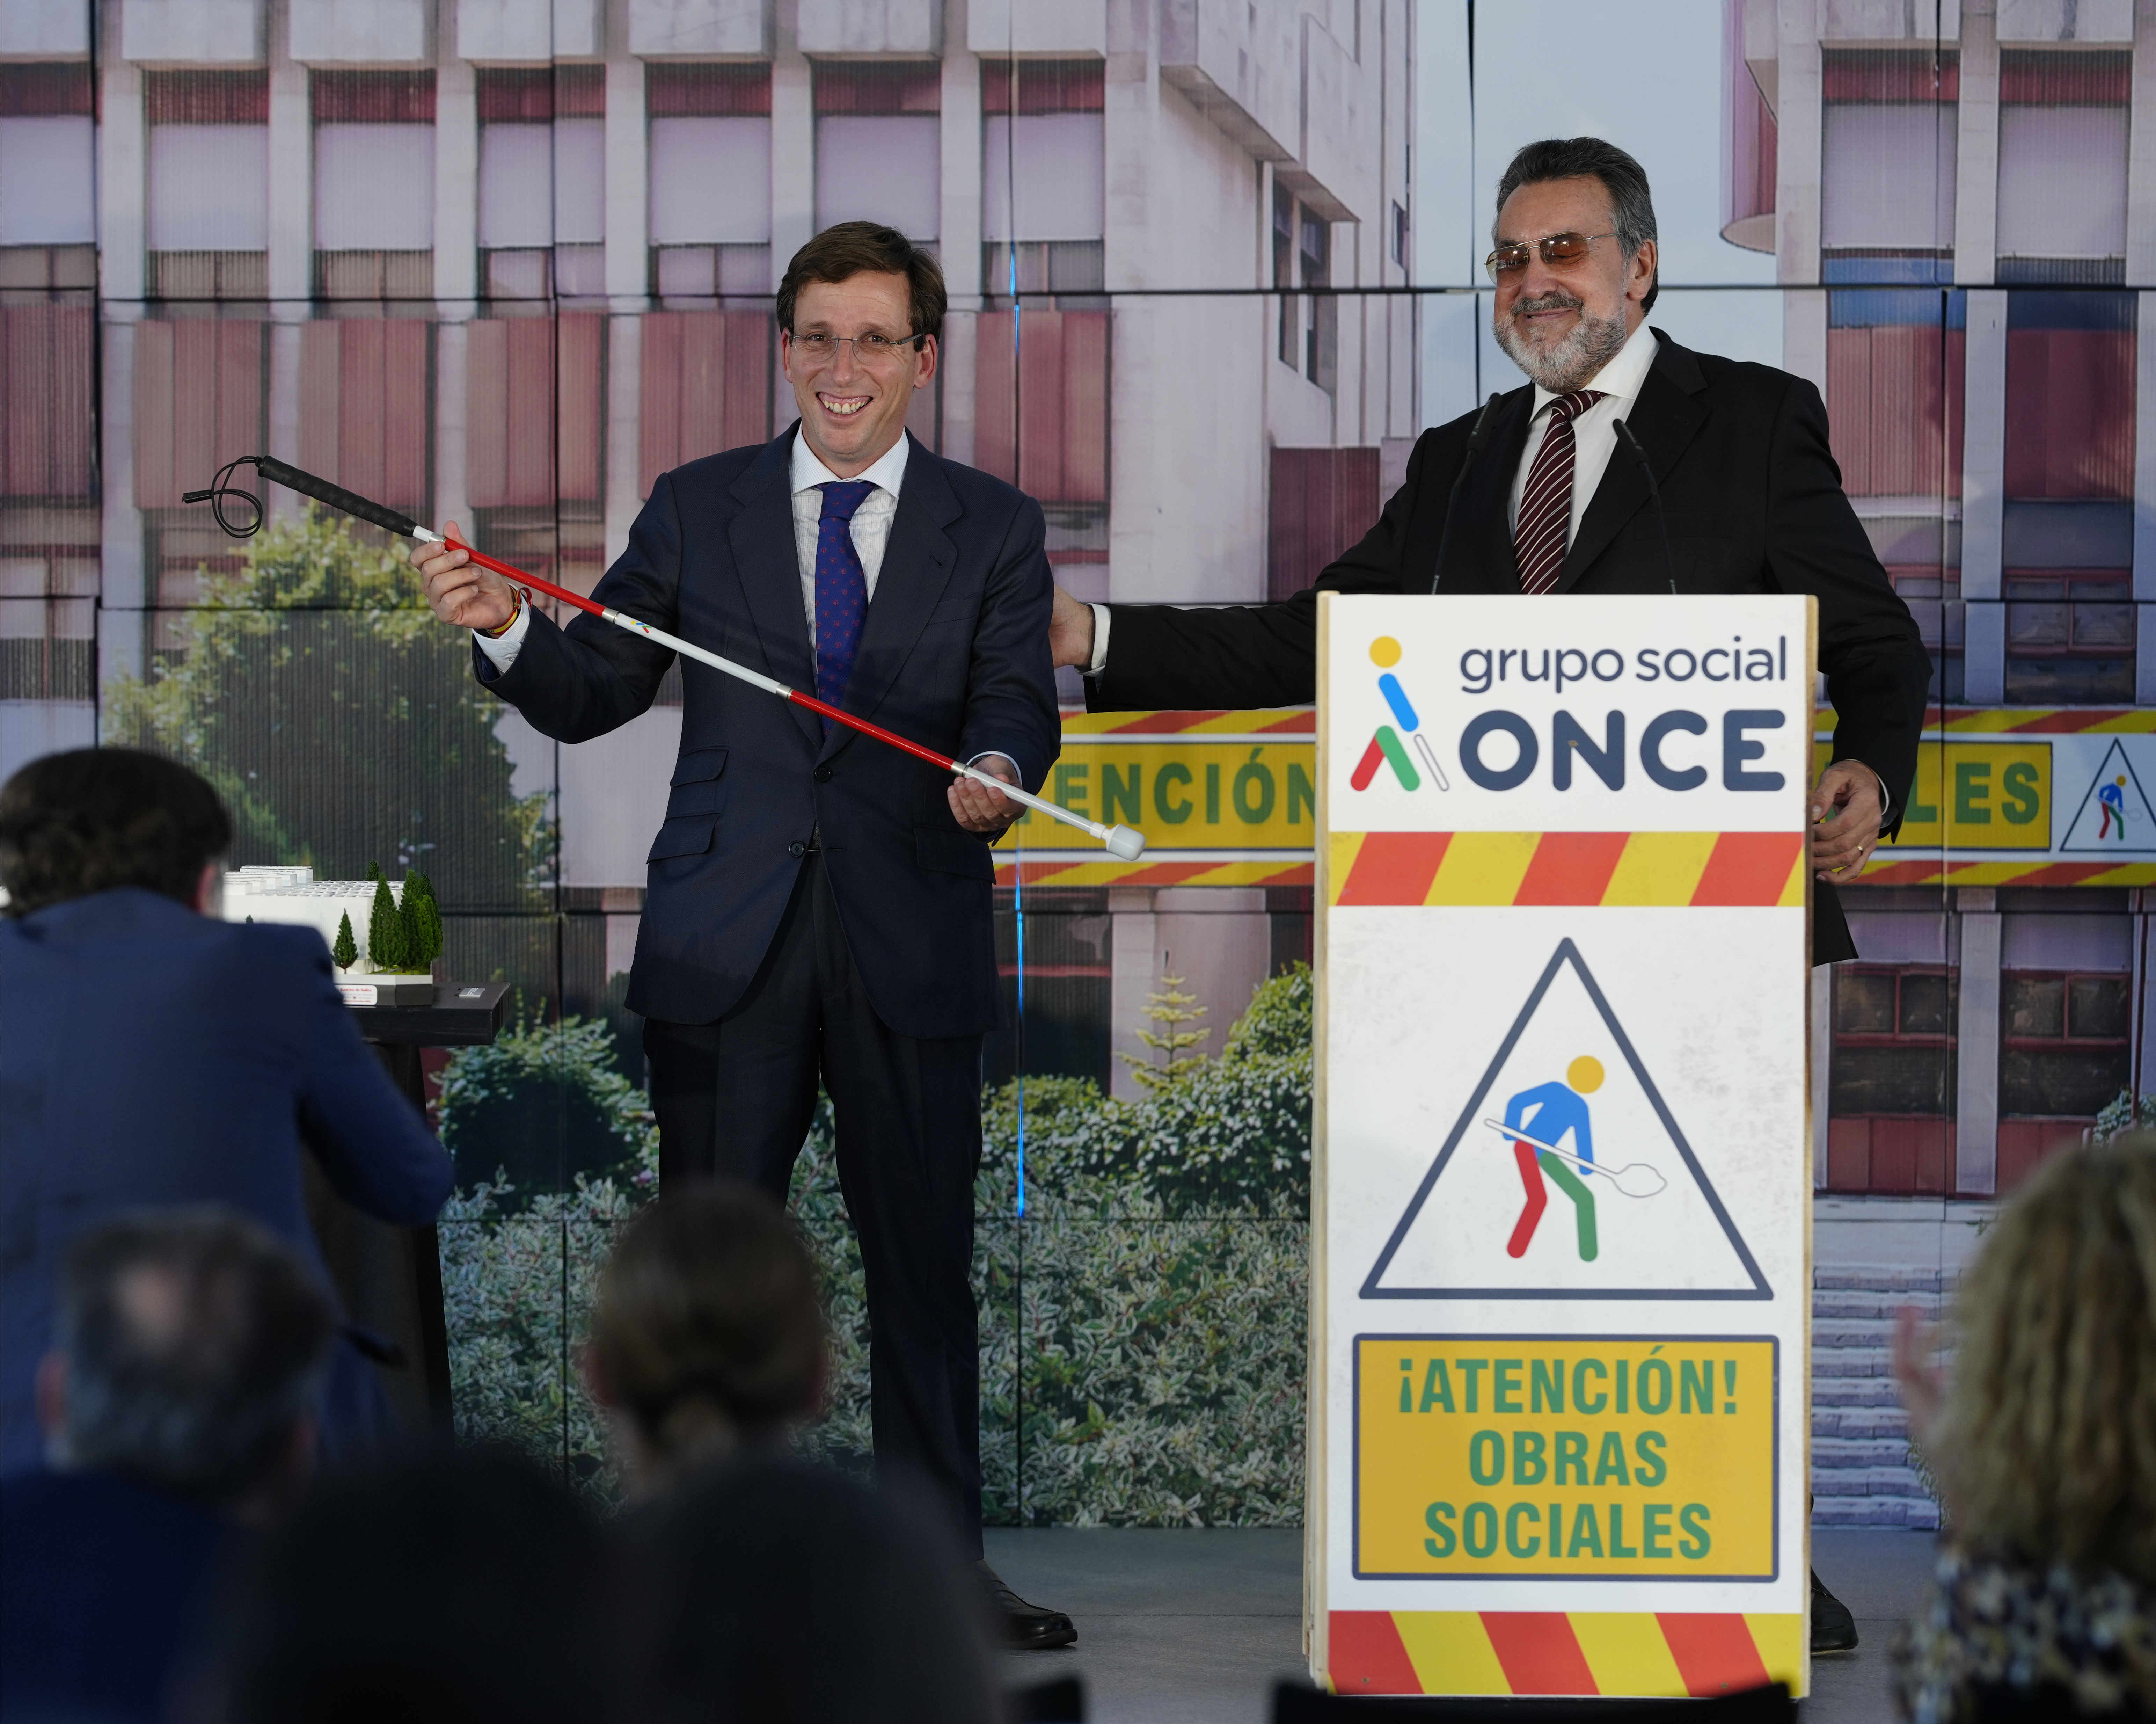 El alcalde de Madrid, José Luis Martínez-Almeida, recibe de la mano del presidente del Grupo Social ONCE, Miguel Carballeda, un bastón rojo y blanco, utilizado por las personas con sordoceguera